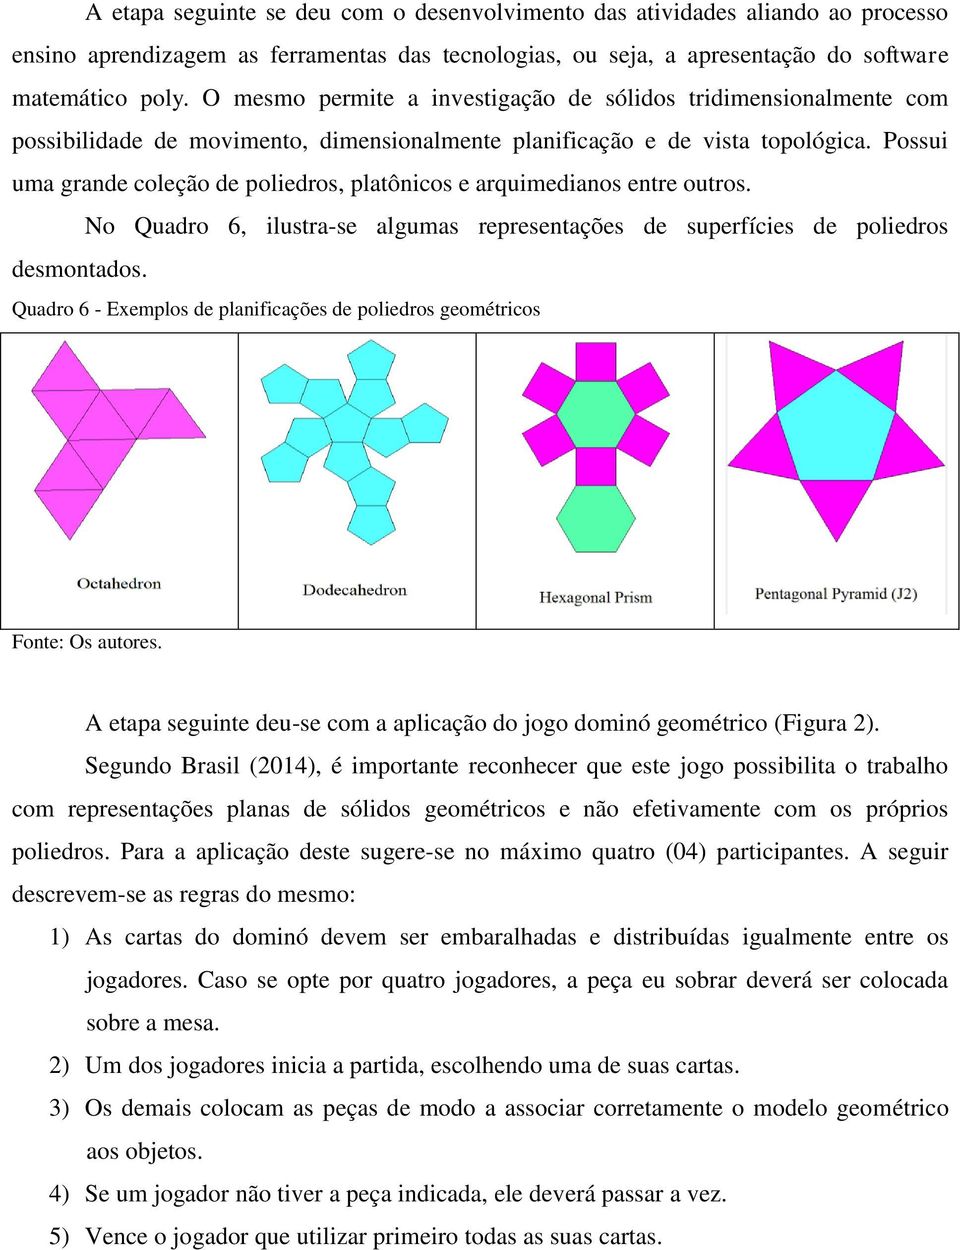 Possui uma grande coleção de poliedros, platônicos e arquimedianos entre outros. No Quadro 6, ilustra-se algumas representações de superfícies de poliedros desmontados.